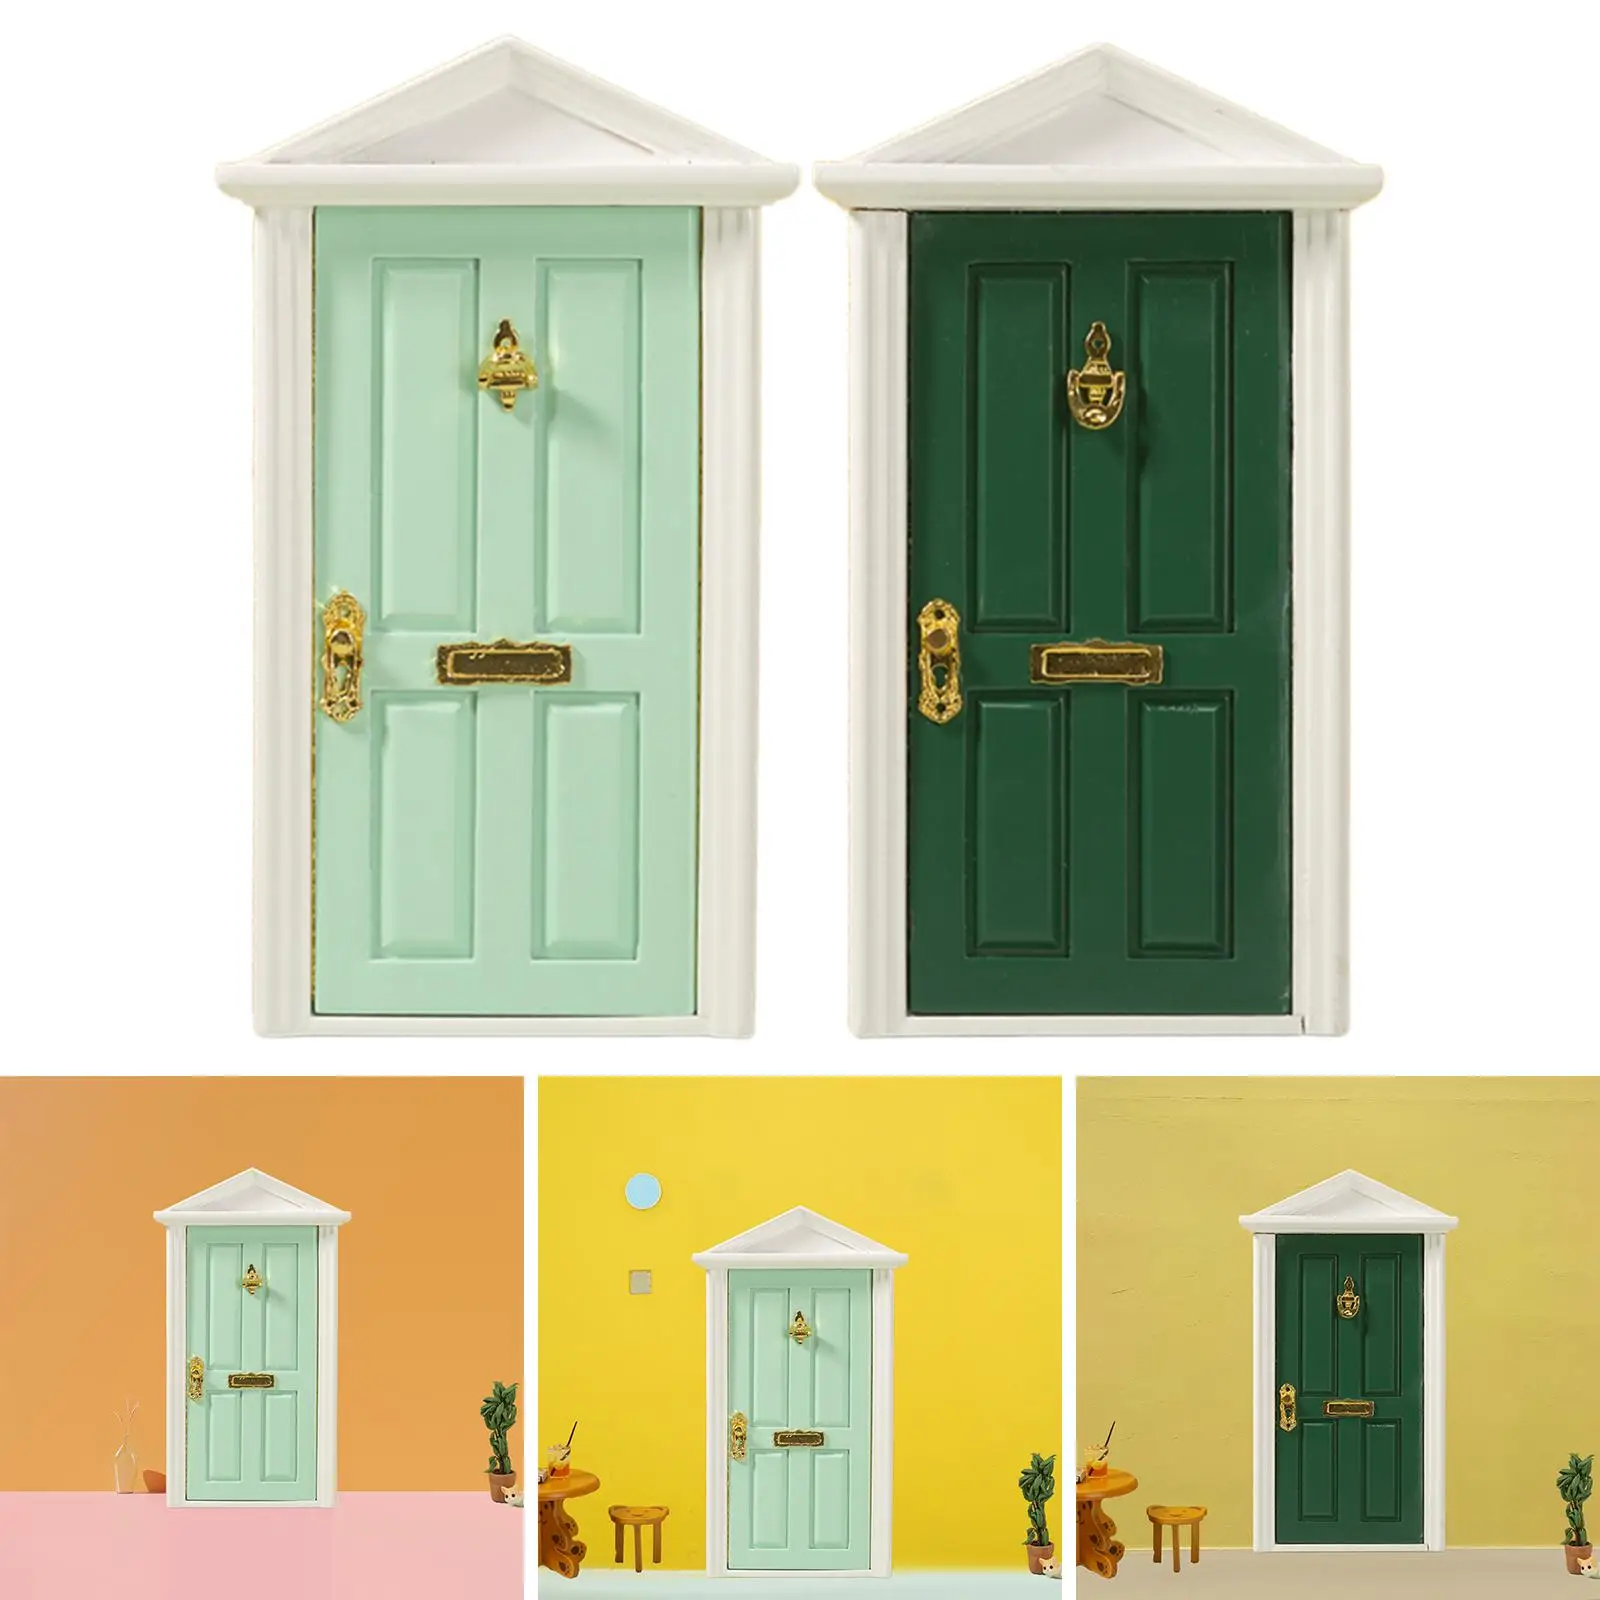 

Миниатюрная дверь в масштабе 1:12, Детские кукольные домики, мебель для детей, подарки